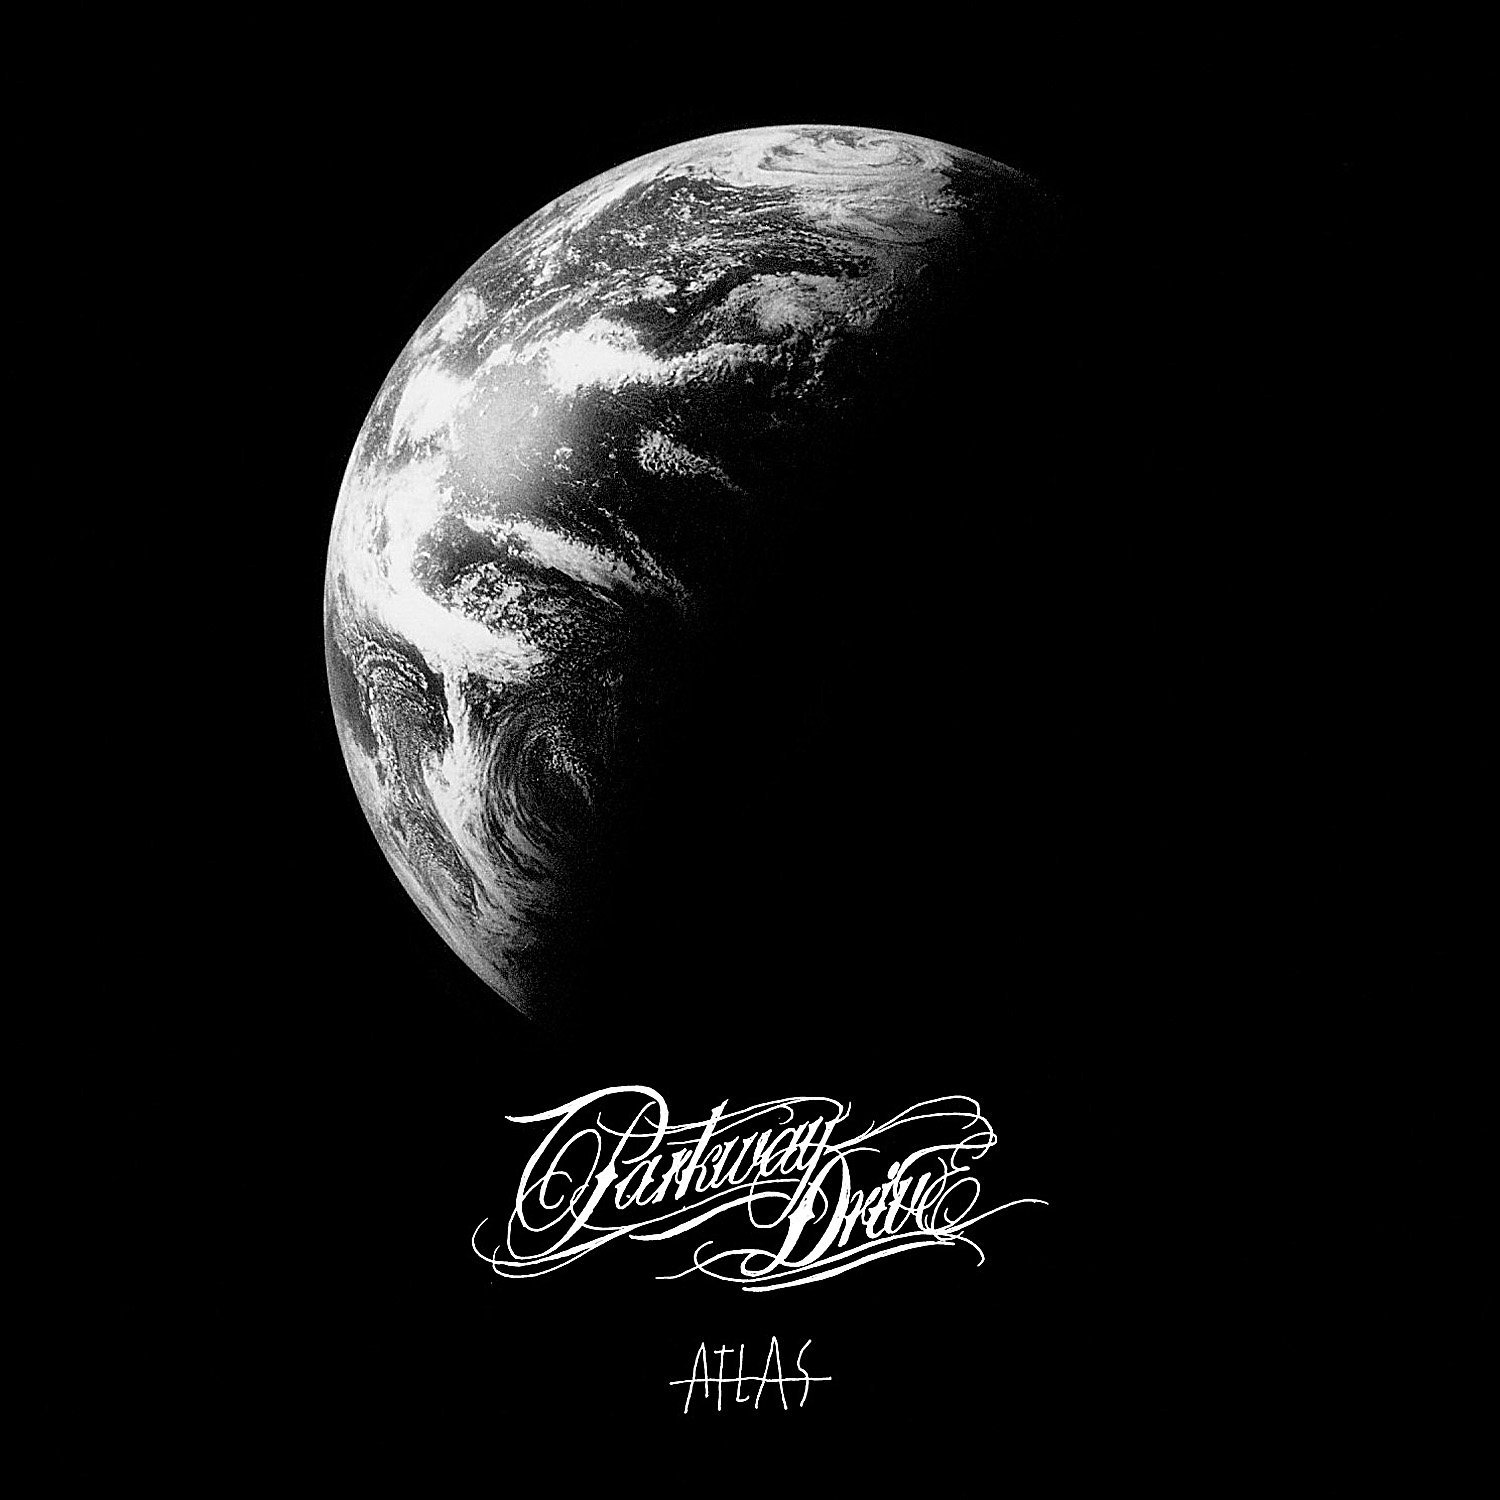 Parkway Drive - Atlas (2012) Album Info